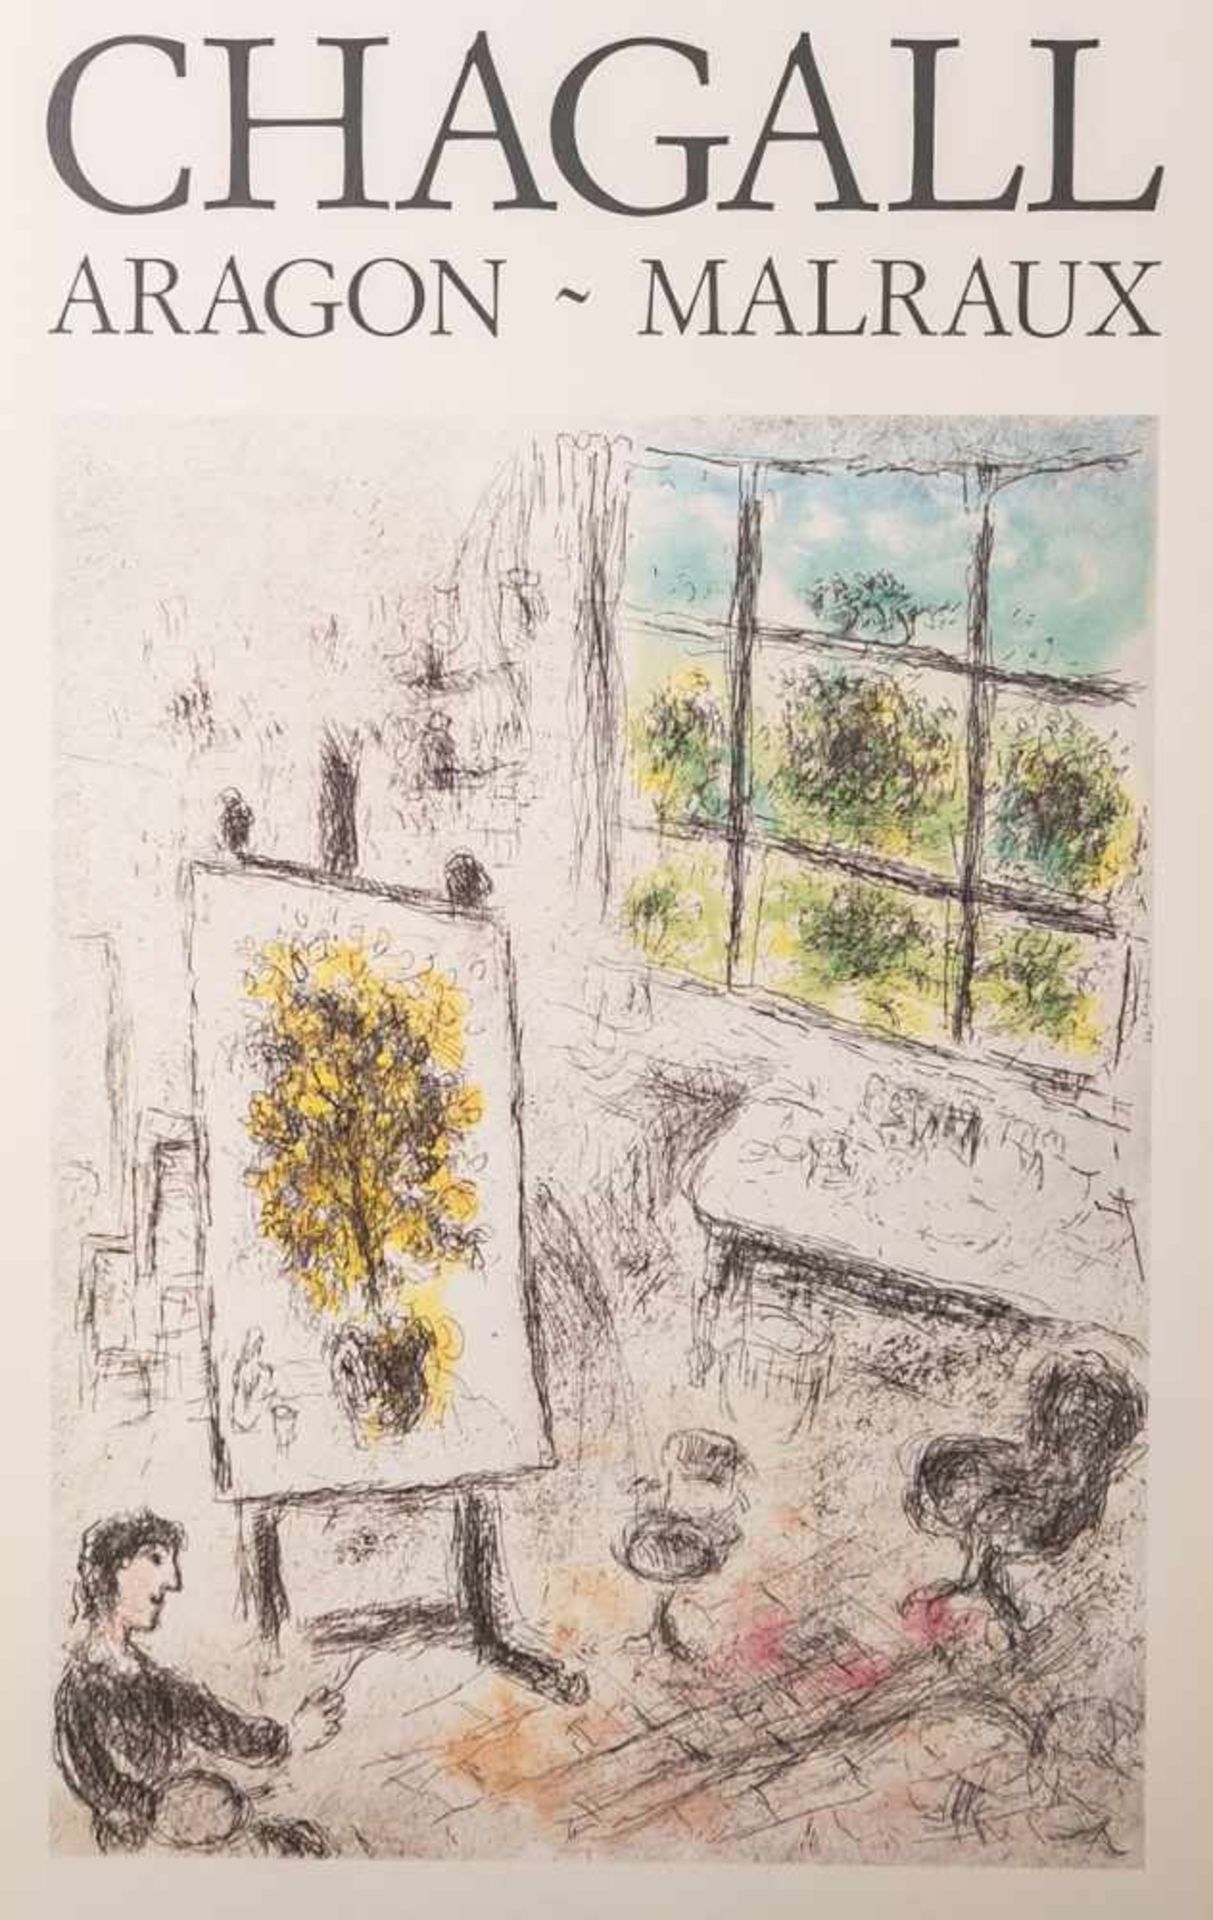 Chagall, Marc (1887 - 1985), Ausstellungsplakat für Chagall-Ausstellung "Aragon - Malraux"<